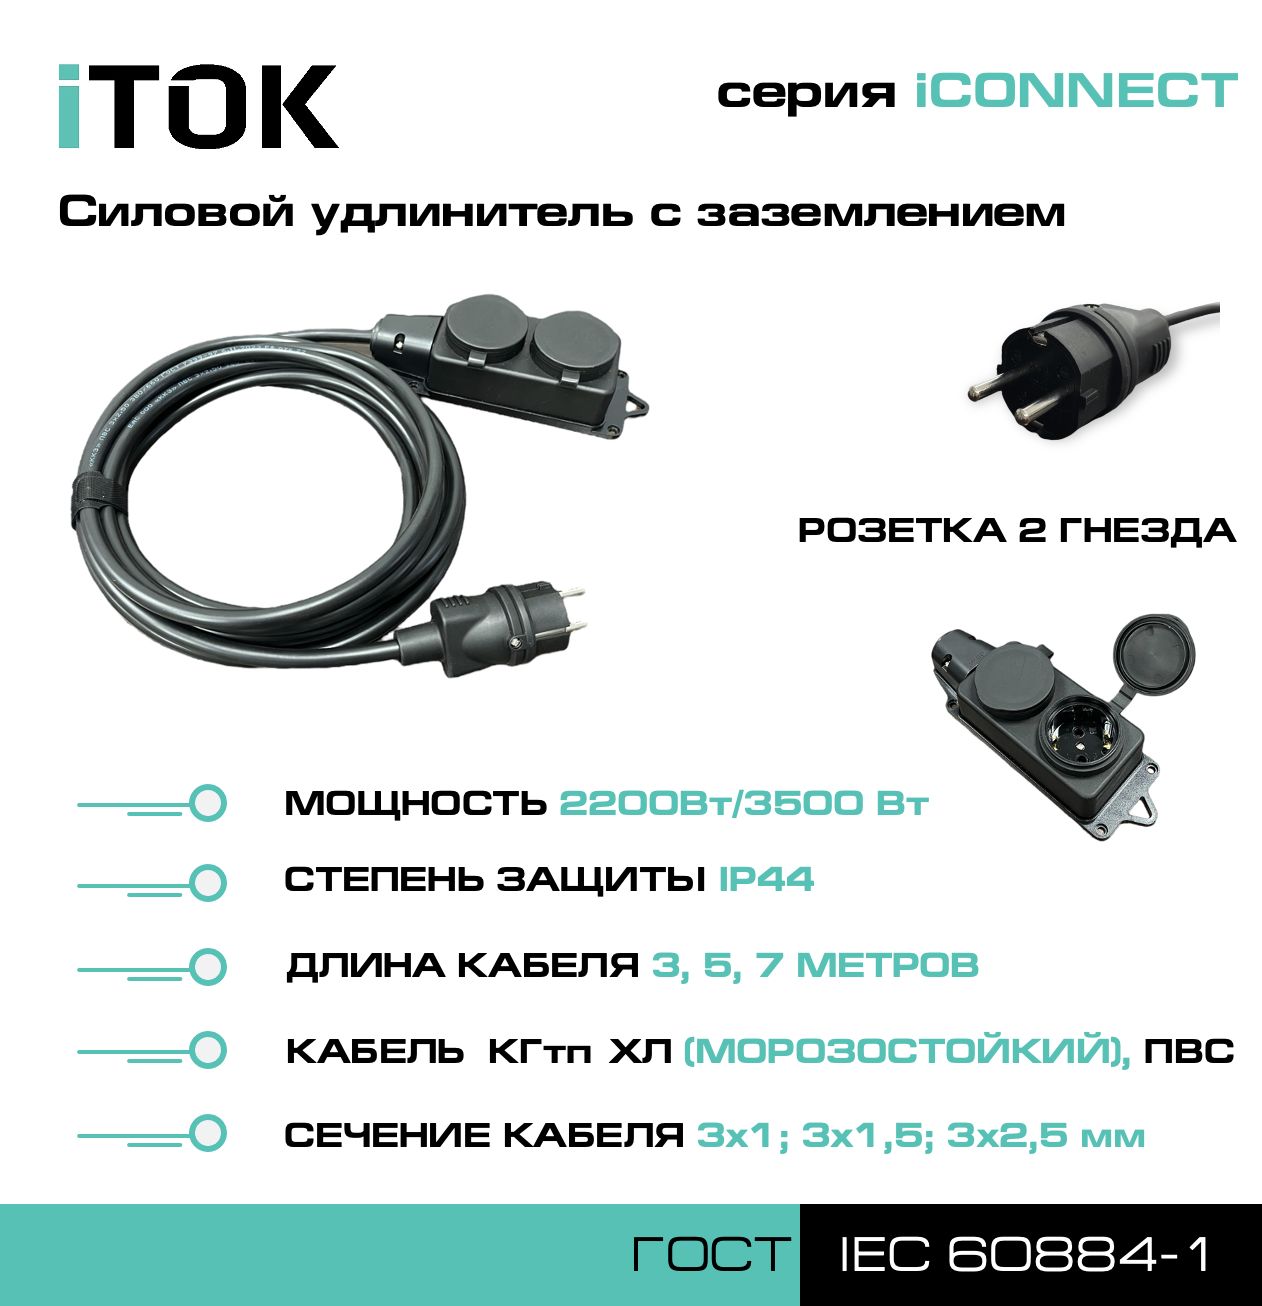 Удлинитель с заземлением серии iTOK iCONNECT ПВС 3х1 мм 2 гнезда IP44 3 м